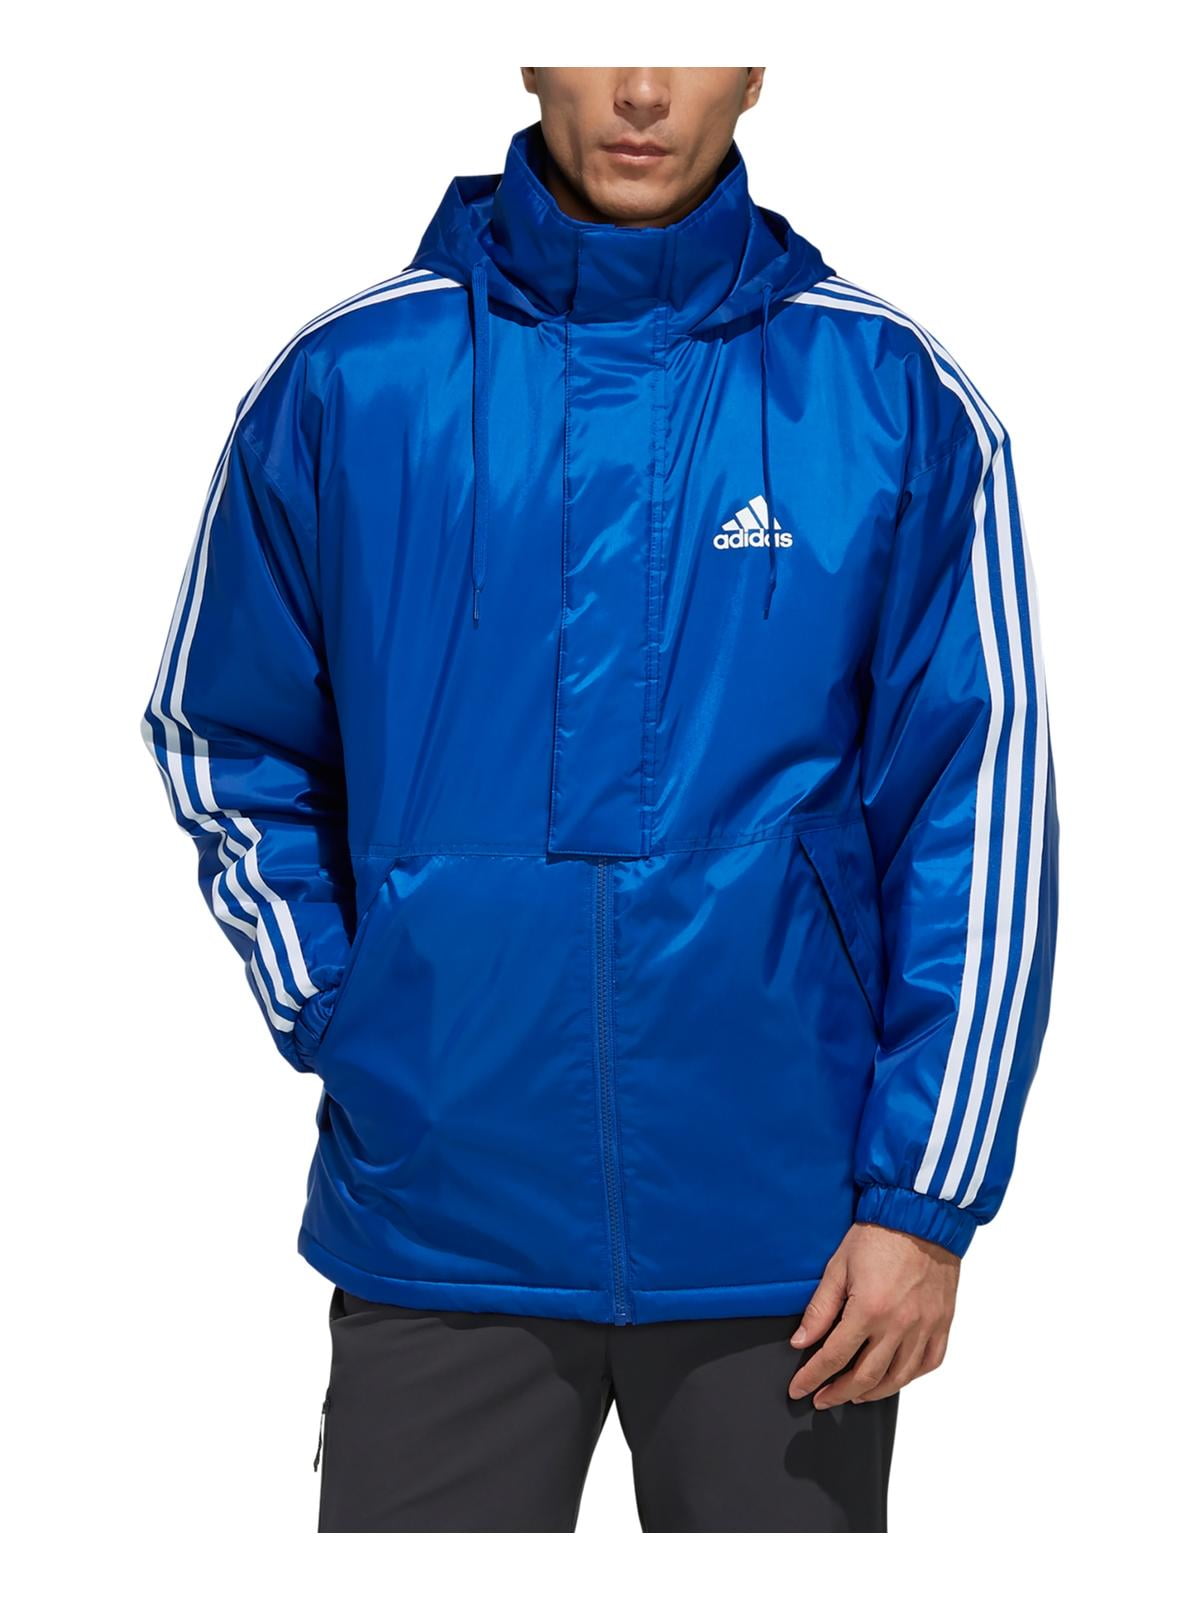 Adidas Mens Activewear Fitness Coat - Walmart.com